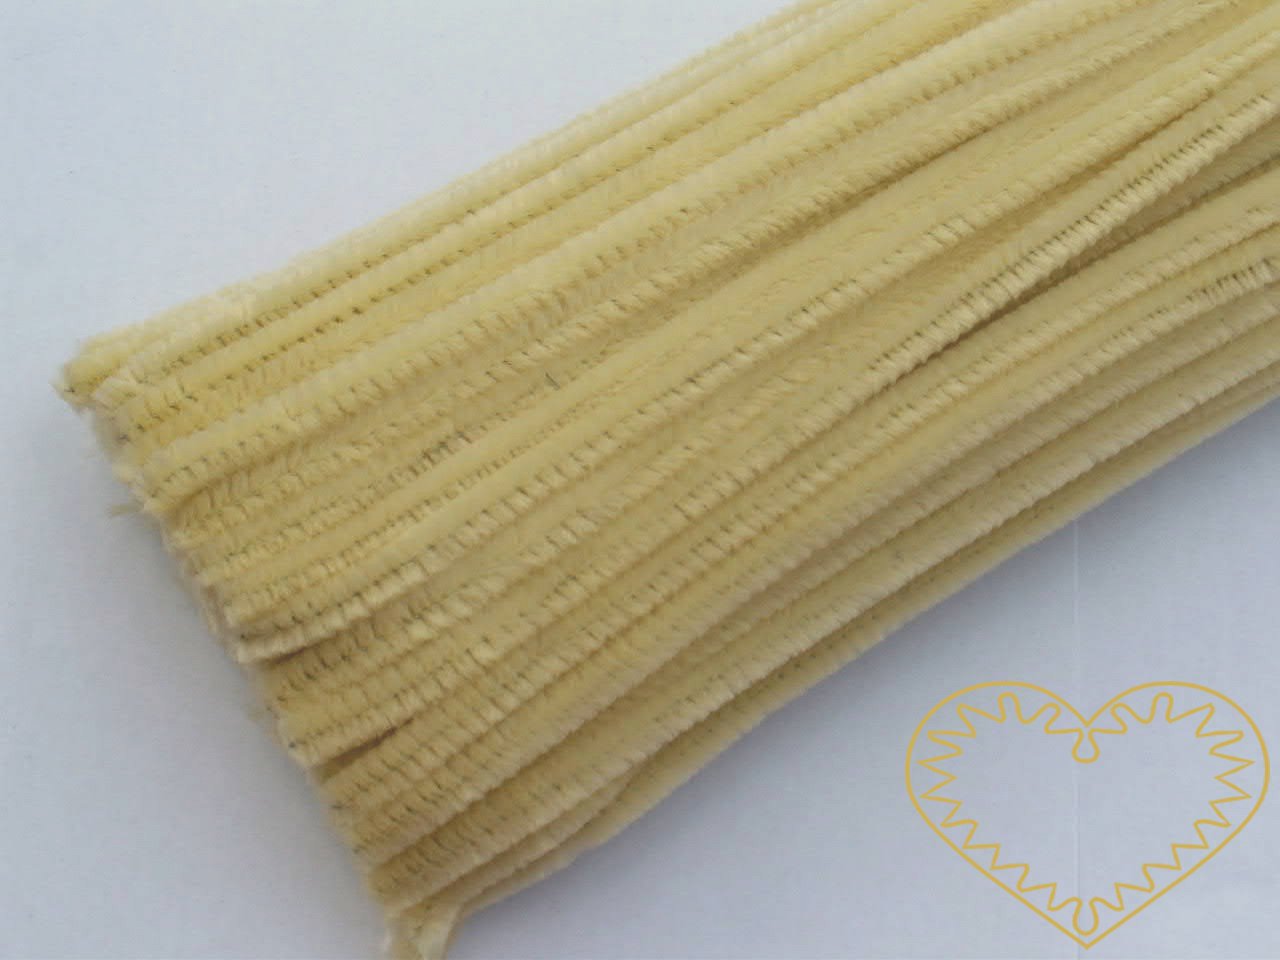 Modelovací chlupatý drátek bledě žlutý - délka cca 30 cm. Drátěná tyčinka opletená vláknem se používá k výrobě různých hraček i ozdob. Lze ji všelijak tvarovat, kroutit, splétat, stříhat, kombinovat například s bambulkami, lepit. Drátek skvěle imituj